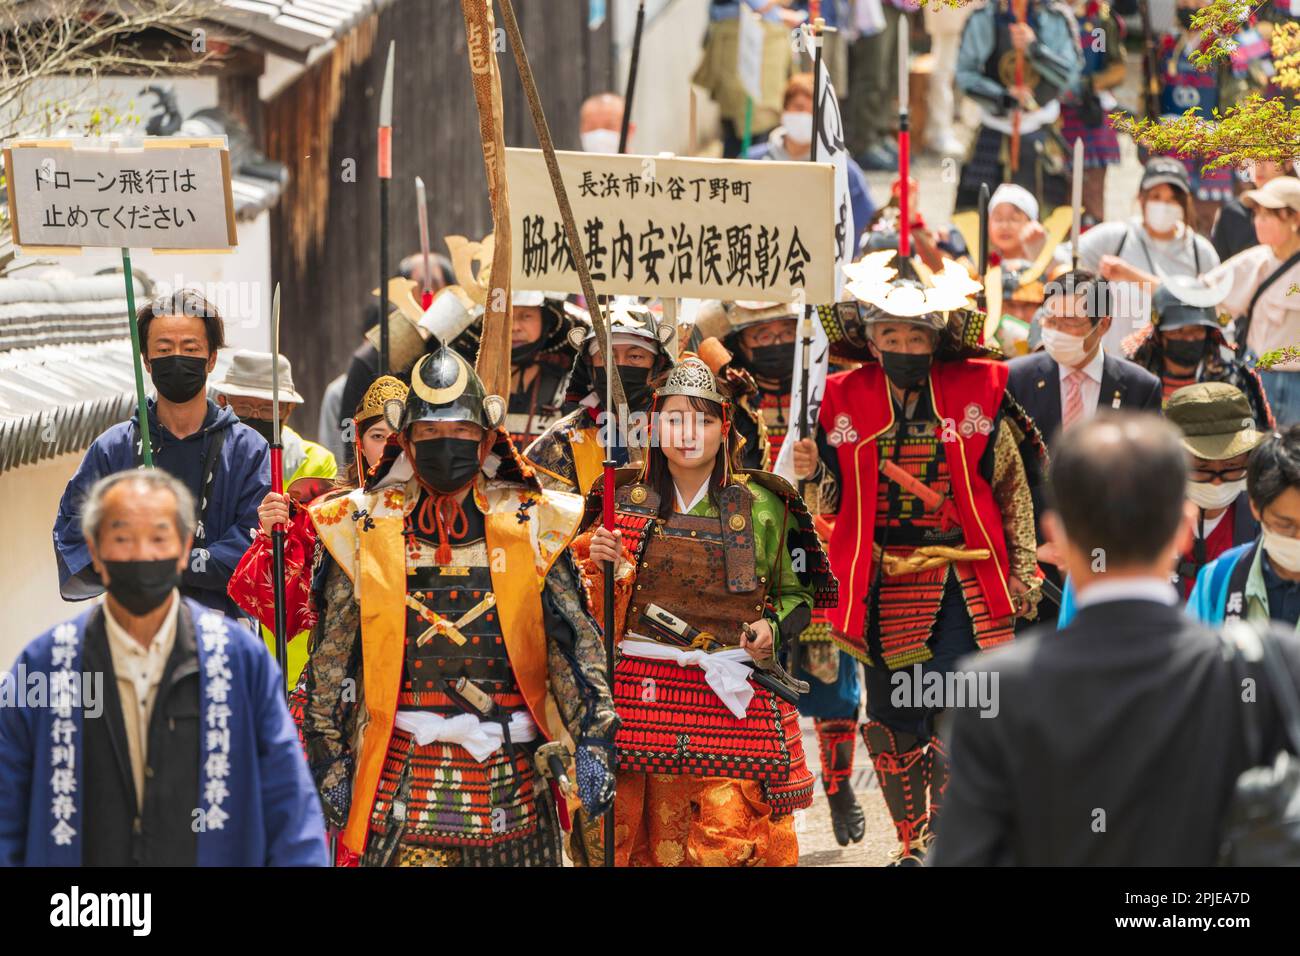 Défilé de personnes habillées en costume de samouraï marchant vers le spectateur. Vue en perspective compressée du front de la parade de marche qui fait partie du festival printanier à Hon-Tatsuno au Japon. Banque D'Images